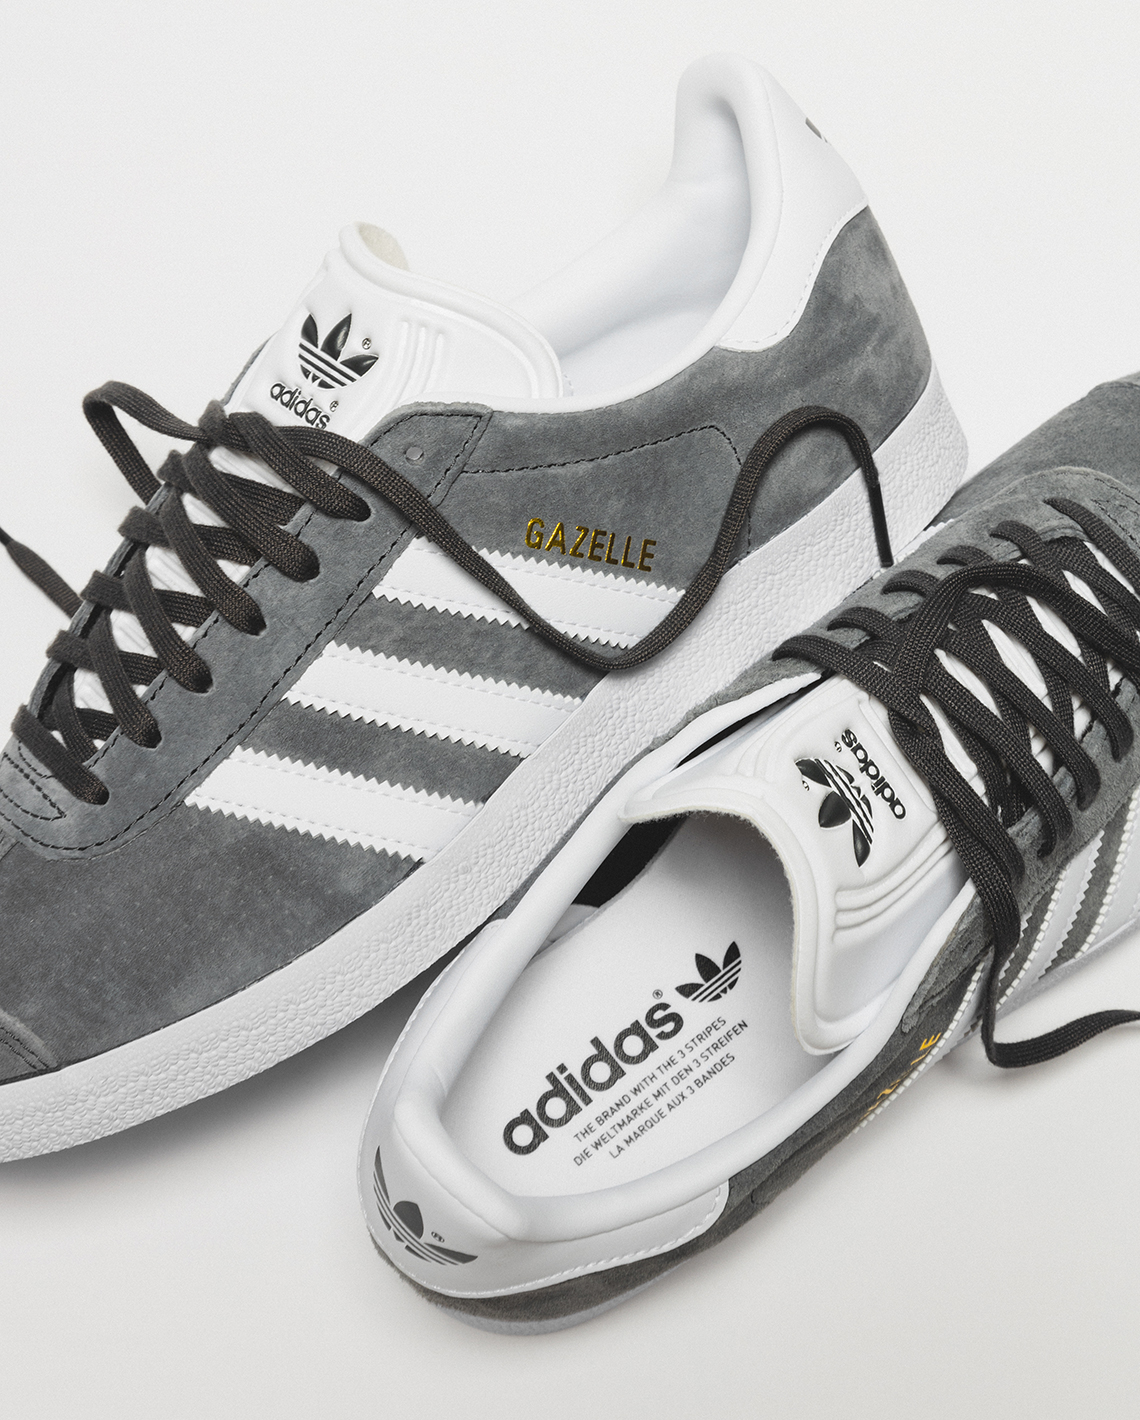 Adidas Shopping Guide March 2022 Footwear Gazelle Gallery 2